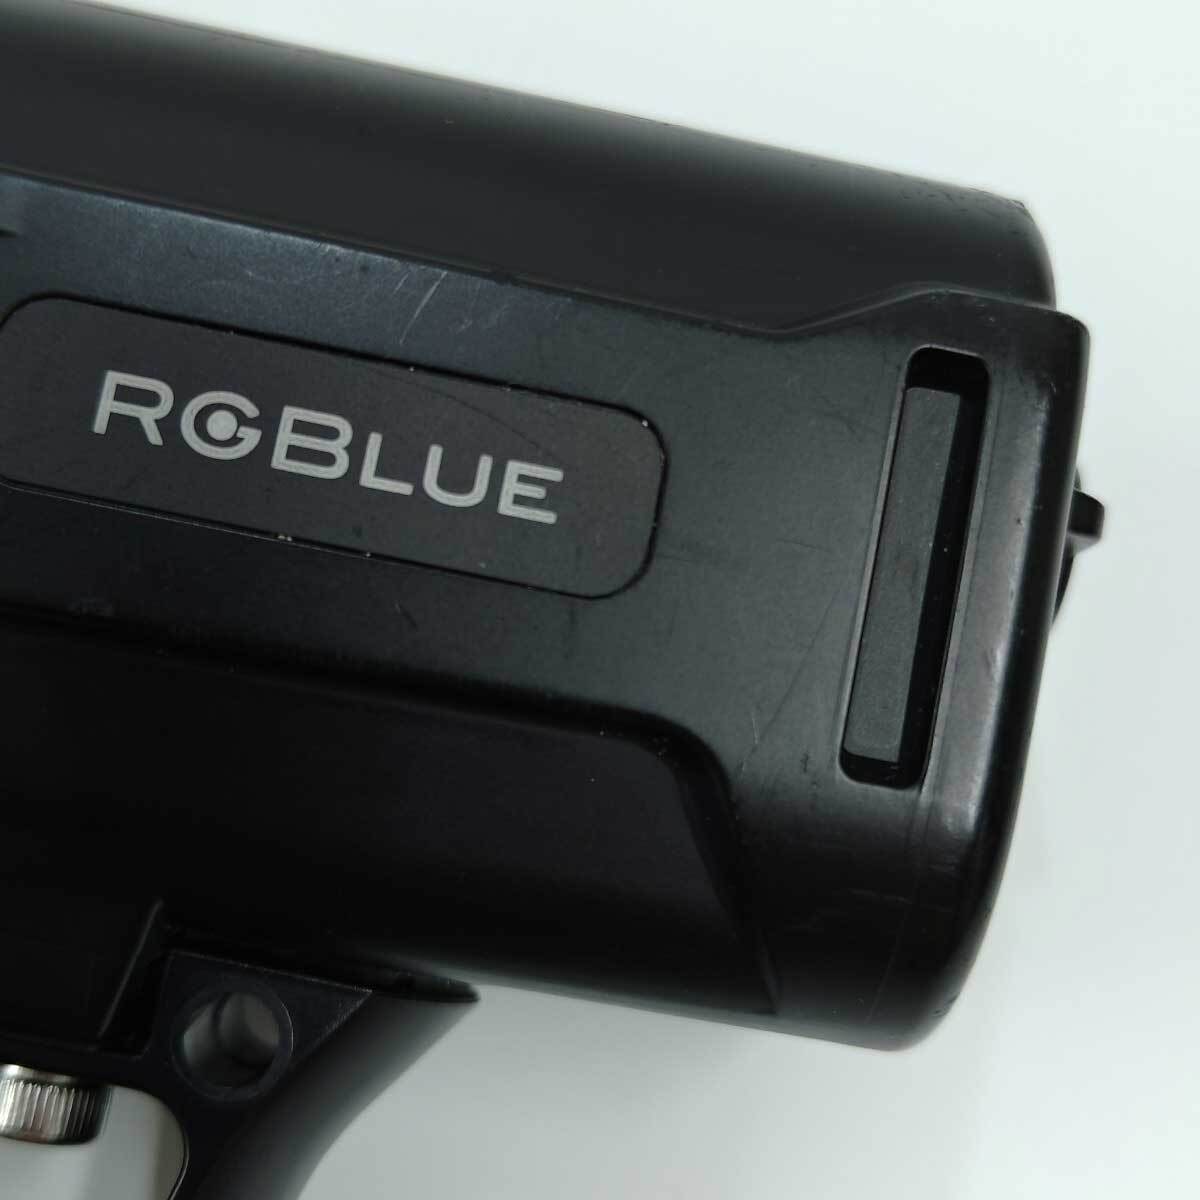 [ б/у ]RGBlue аккумулятор модуль система 02:re дайвинг с аквалангом сопутствующие товары подводный свет BM6721L